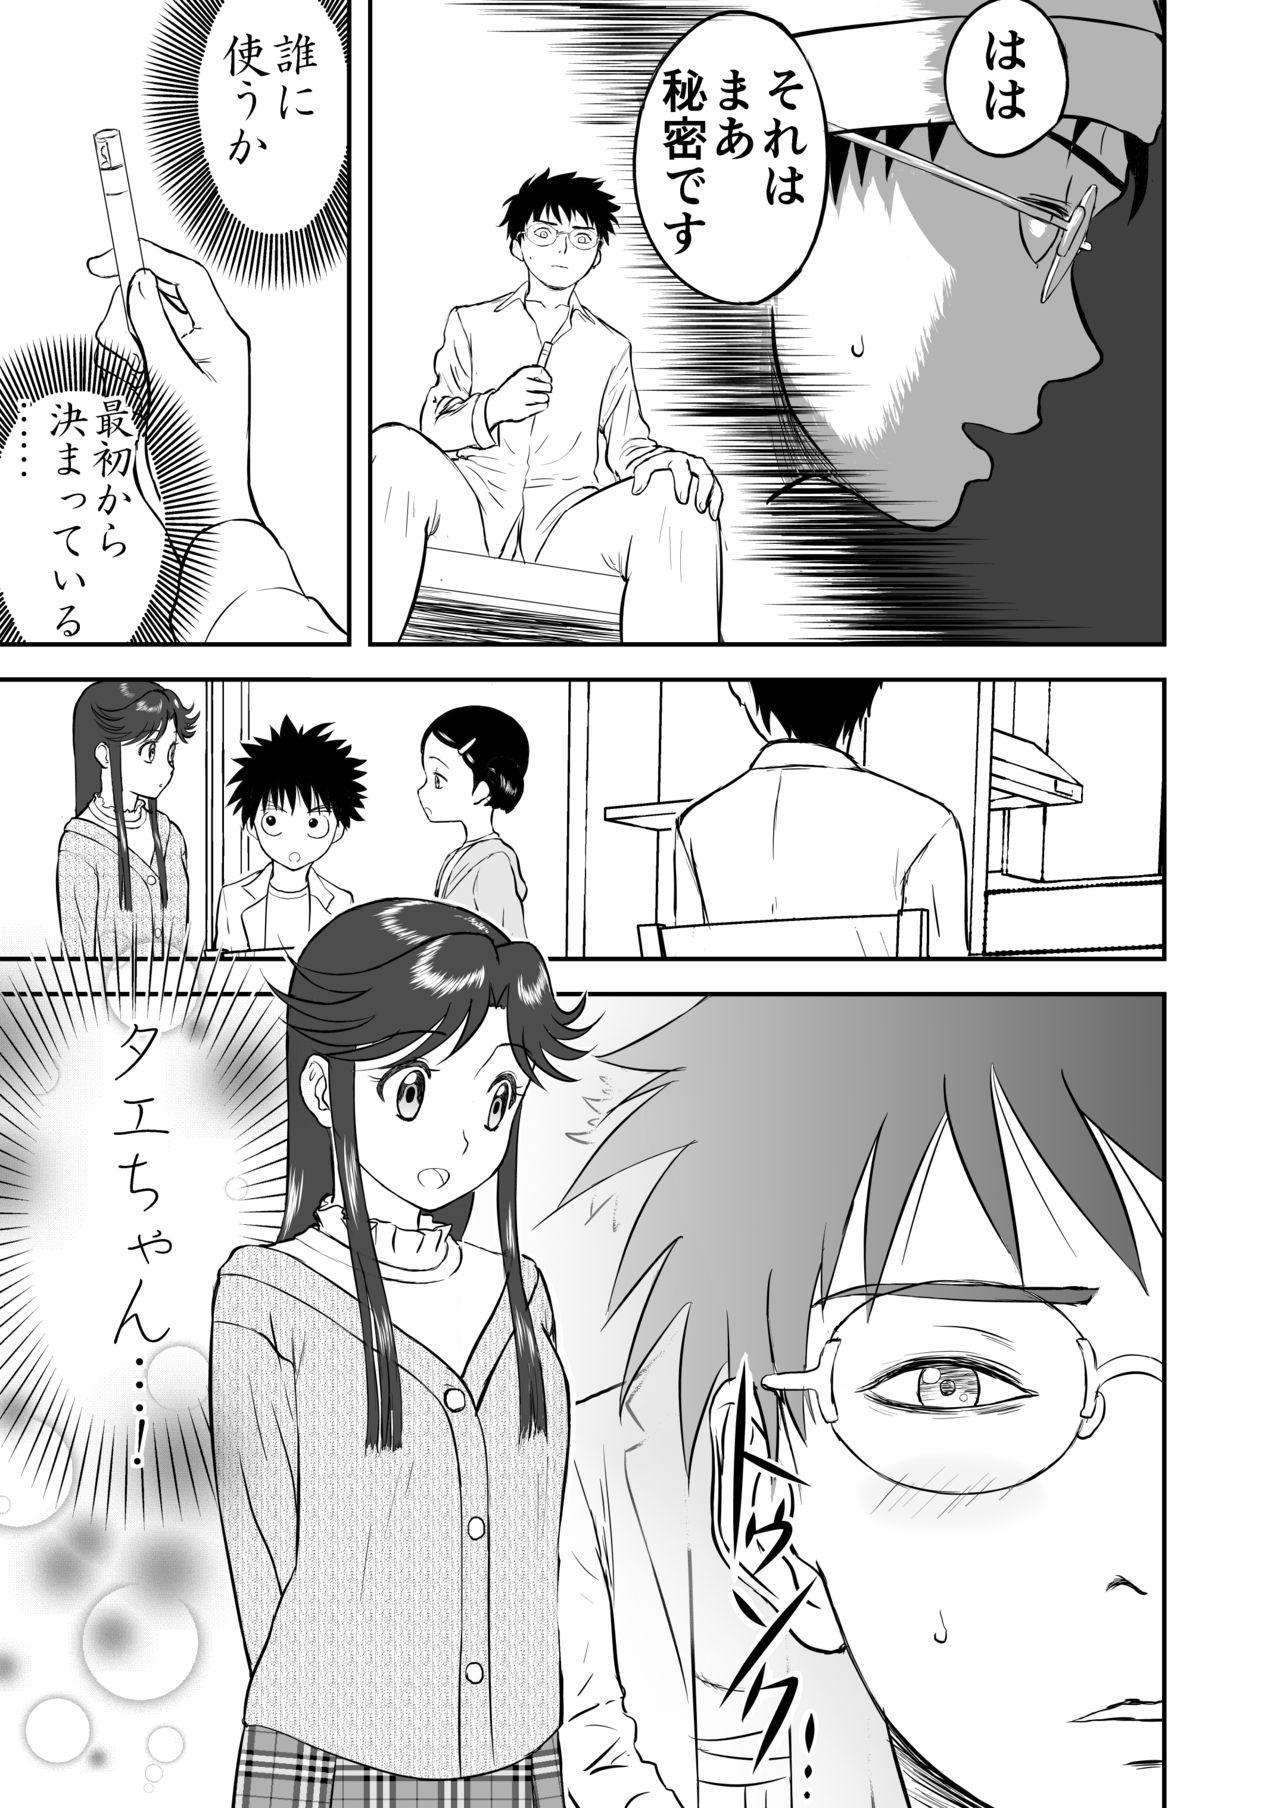 Asslicking Mousou Meisaku Kuradashi Gekijou Sono 3 "NanKite San" + Omake - Original Culonas - Page 11